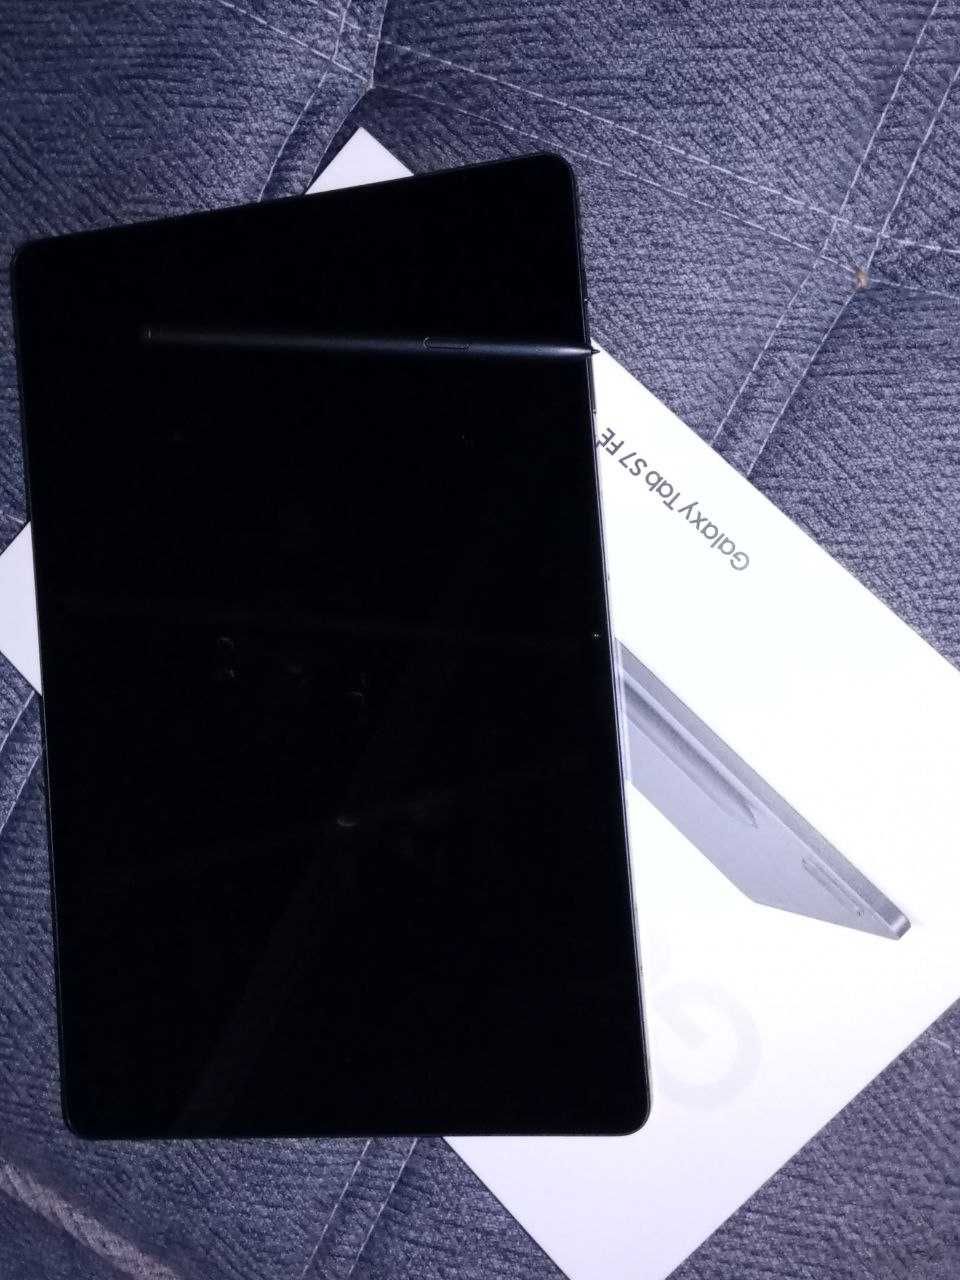 Samsung Galaxy Tab S7 FE Plansheti sotiladi